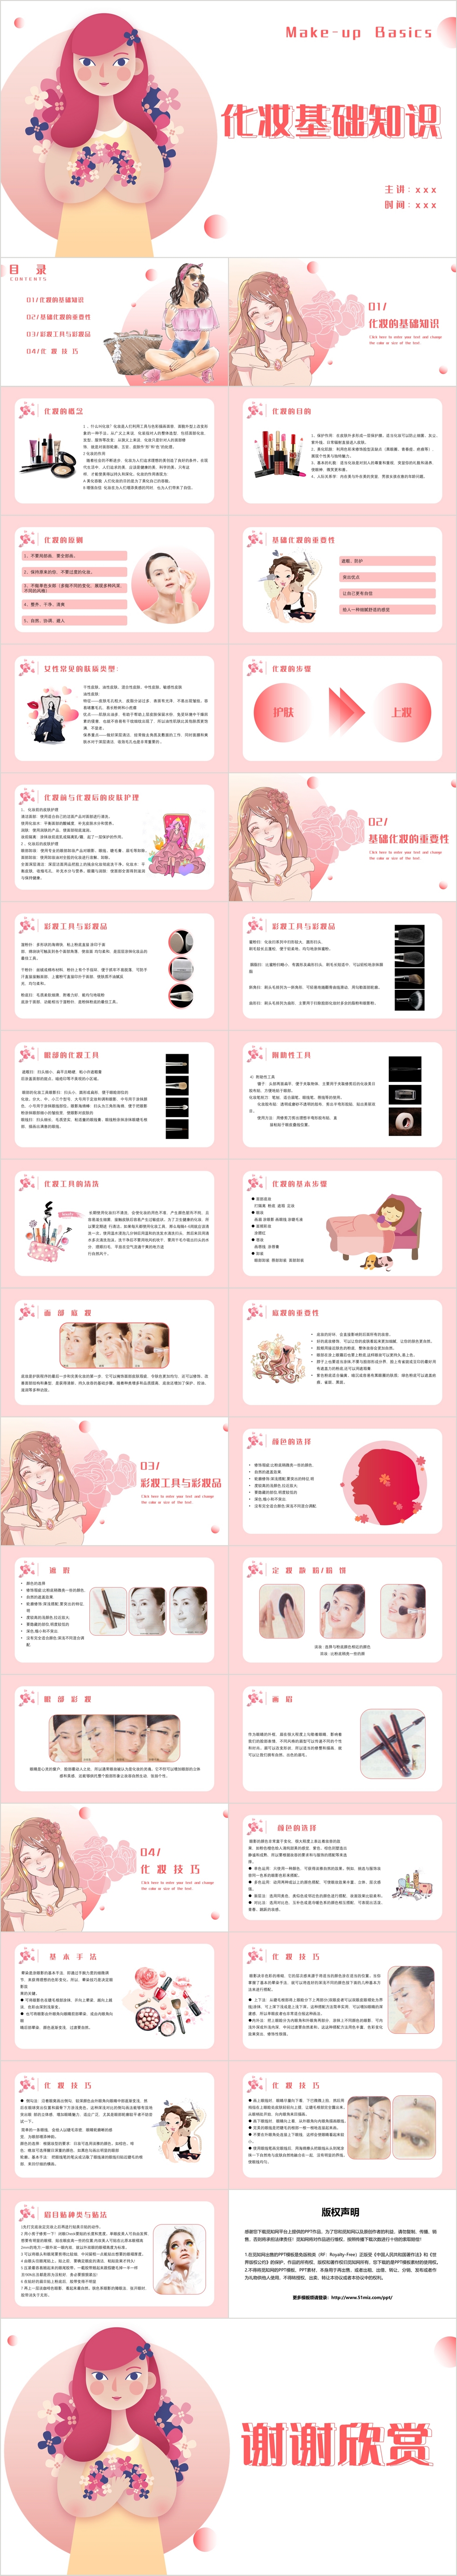 清新粉色简约风格化妆基础知识培训PPT模板